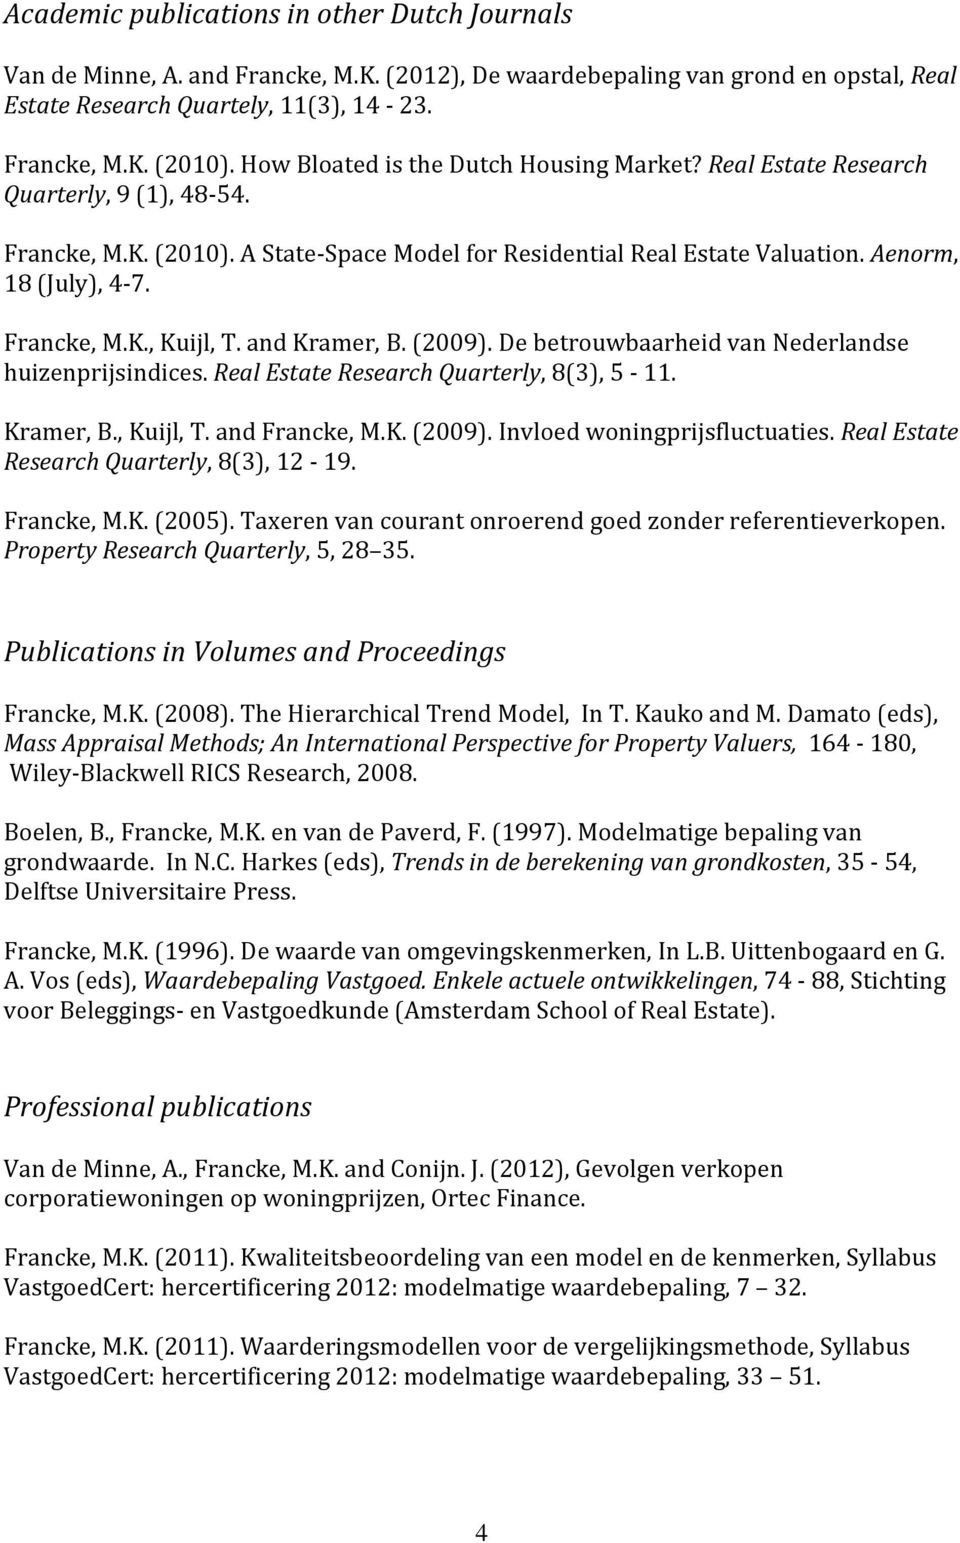 Francke, M.K., Kuijl, T. and Kramer, B. (2009). De betrouwbaarheid van Nederlandse huizenprijsindices. Real Estate Research Quarterly, 8(3), 5-11. Kramer, B., Kuijl, T. and Francke, M.K. (2009). Invloed woningprijsfluctuaties.